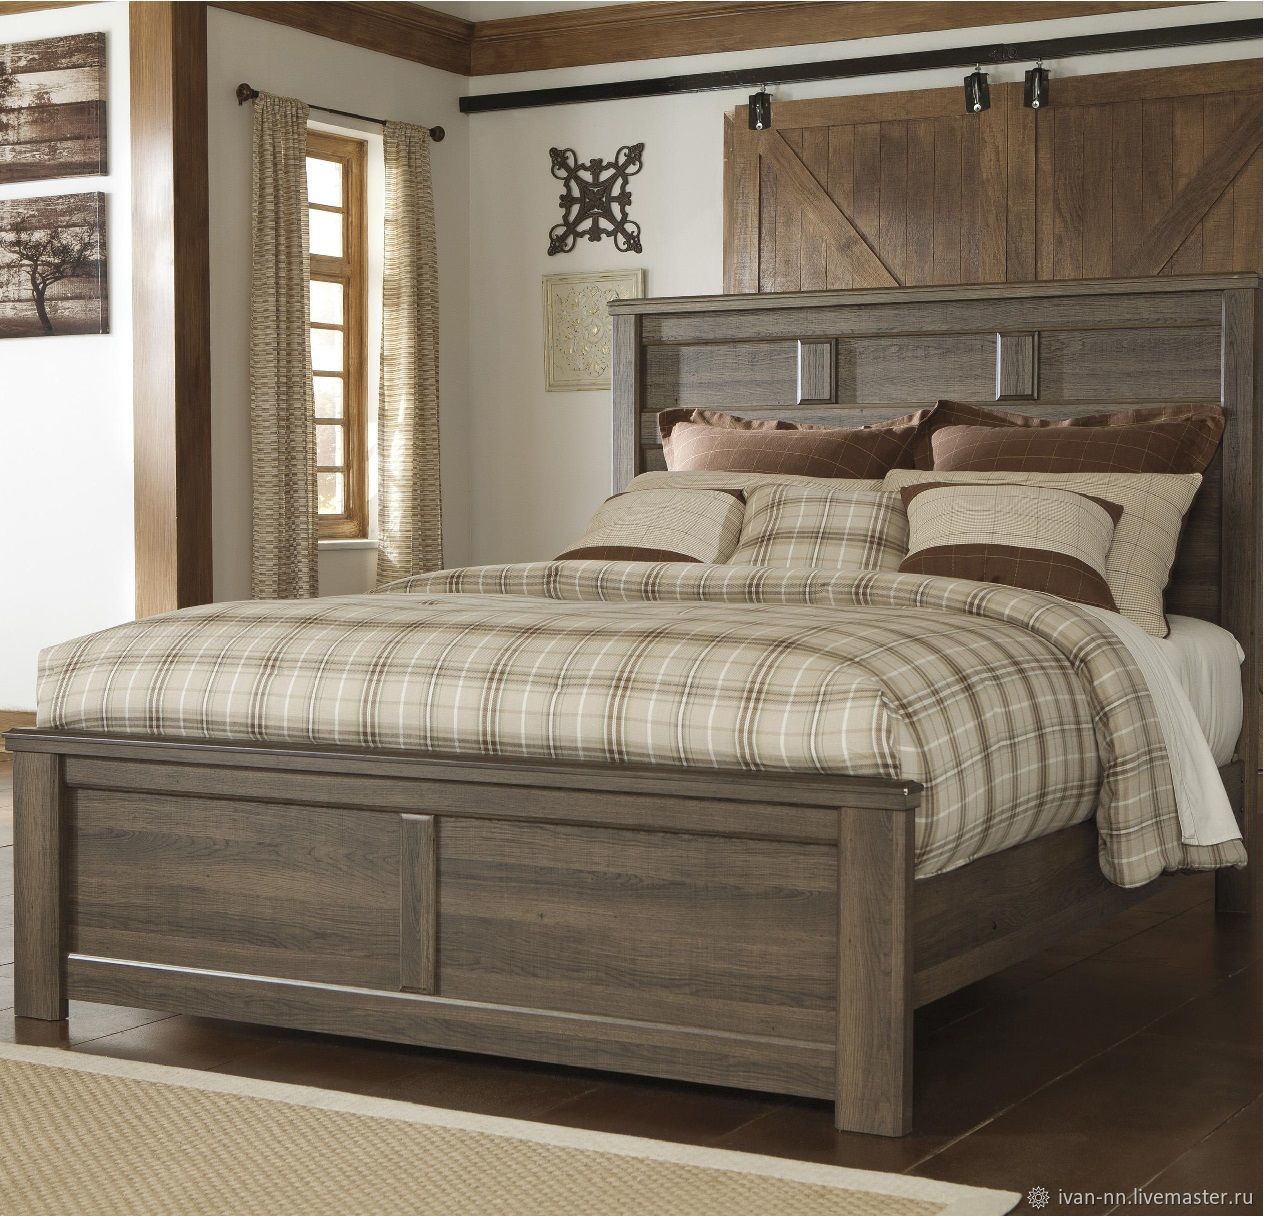 Кровать с высоким матрасом в американском стиле